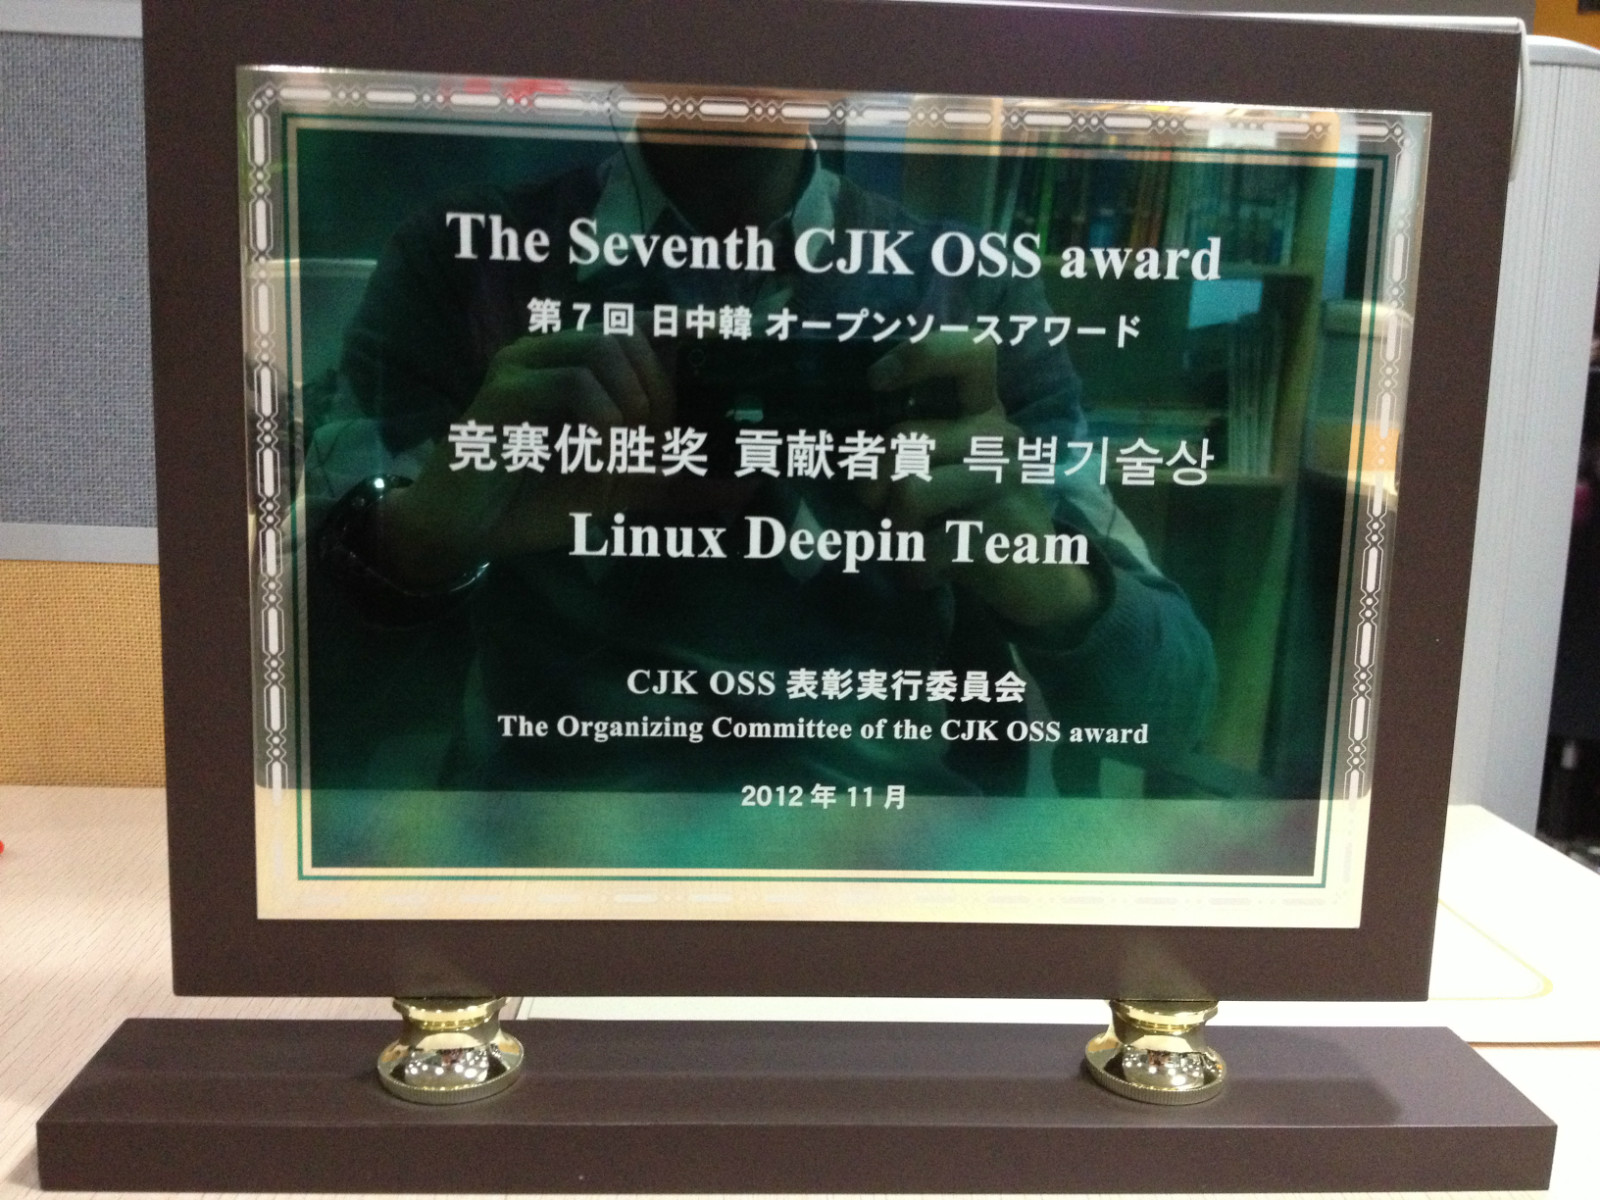 深度操作系统在东北亚开源软件大赛中获奖